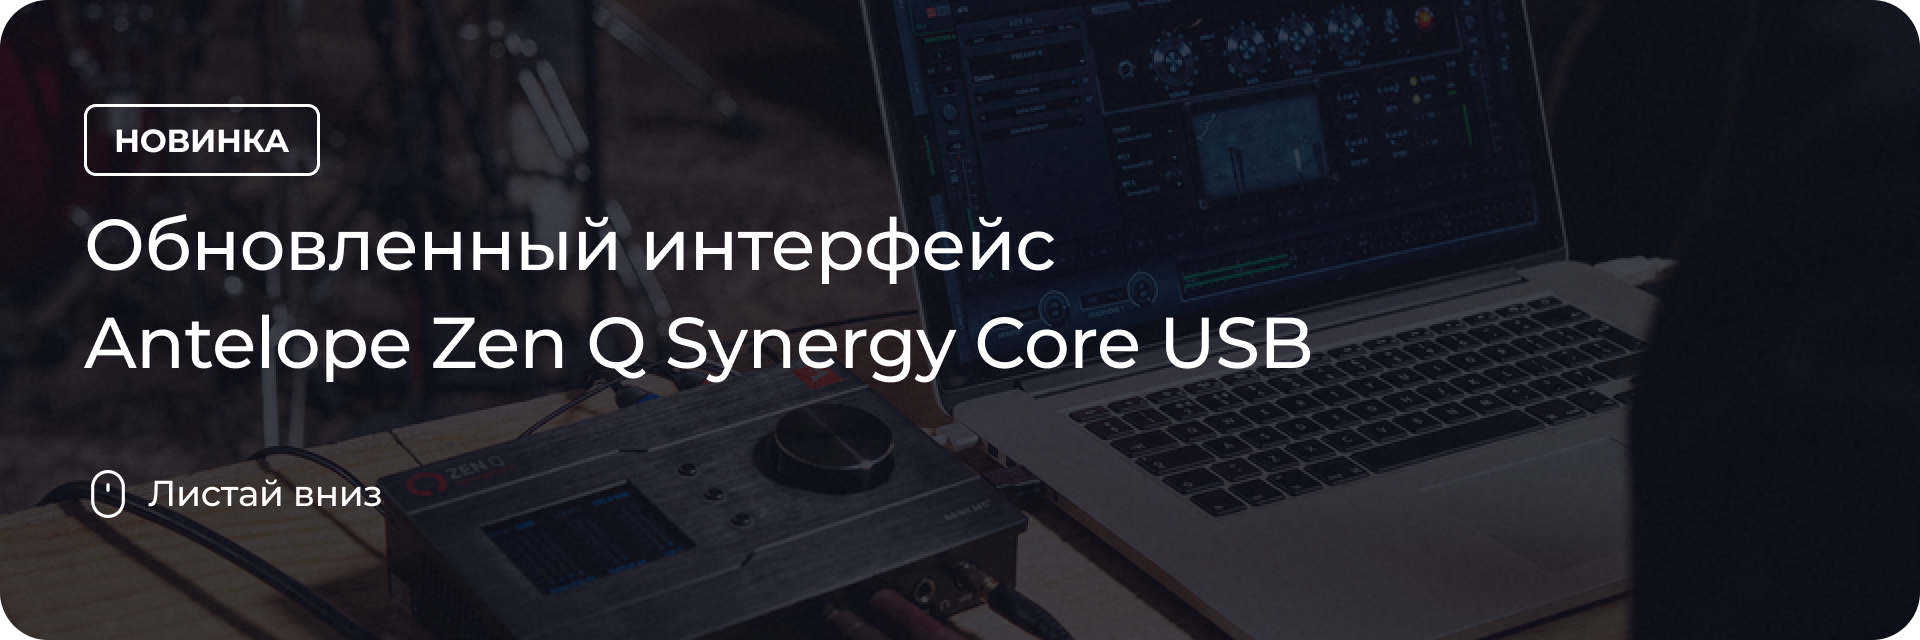 Обновленный интерфейс Antelope Zen Q Synergy Core USB